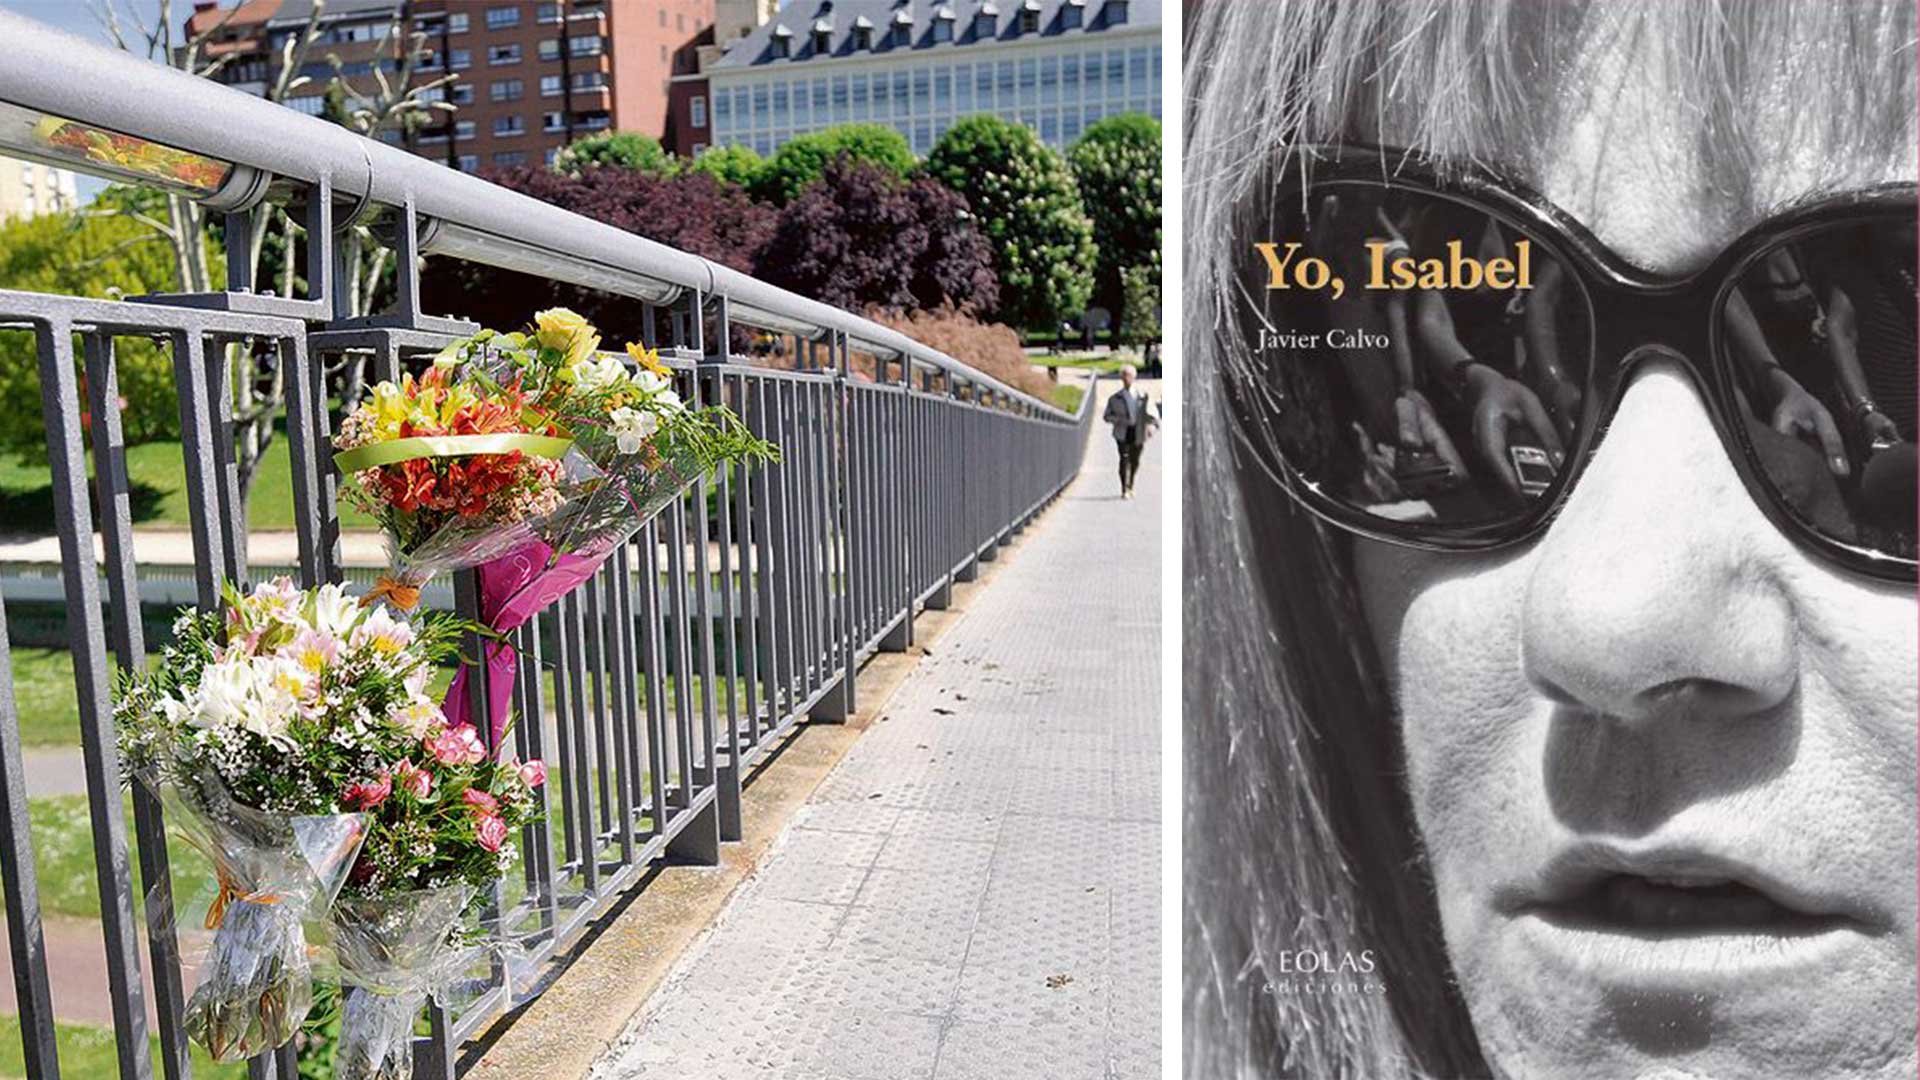 Unas flores en el puente donde fue asesinada. | MAURICIO PEÑA